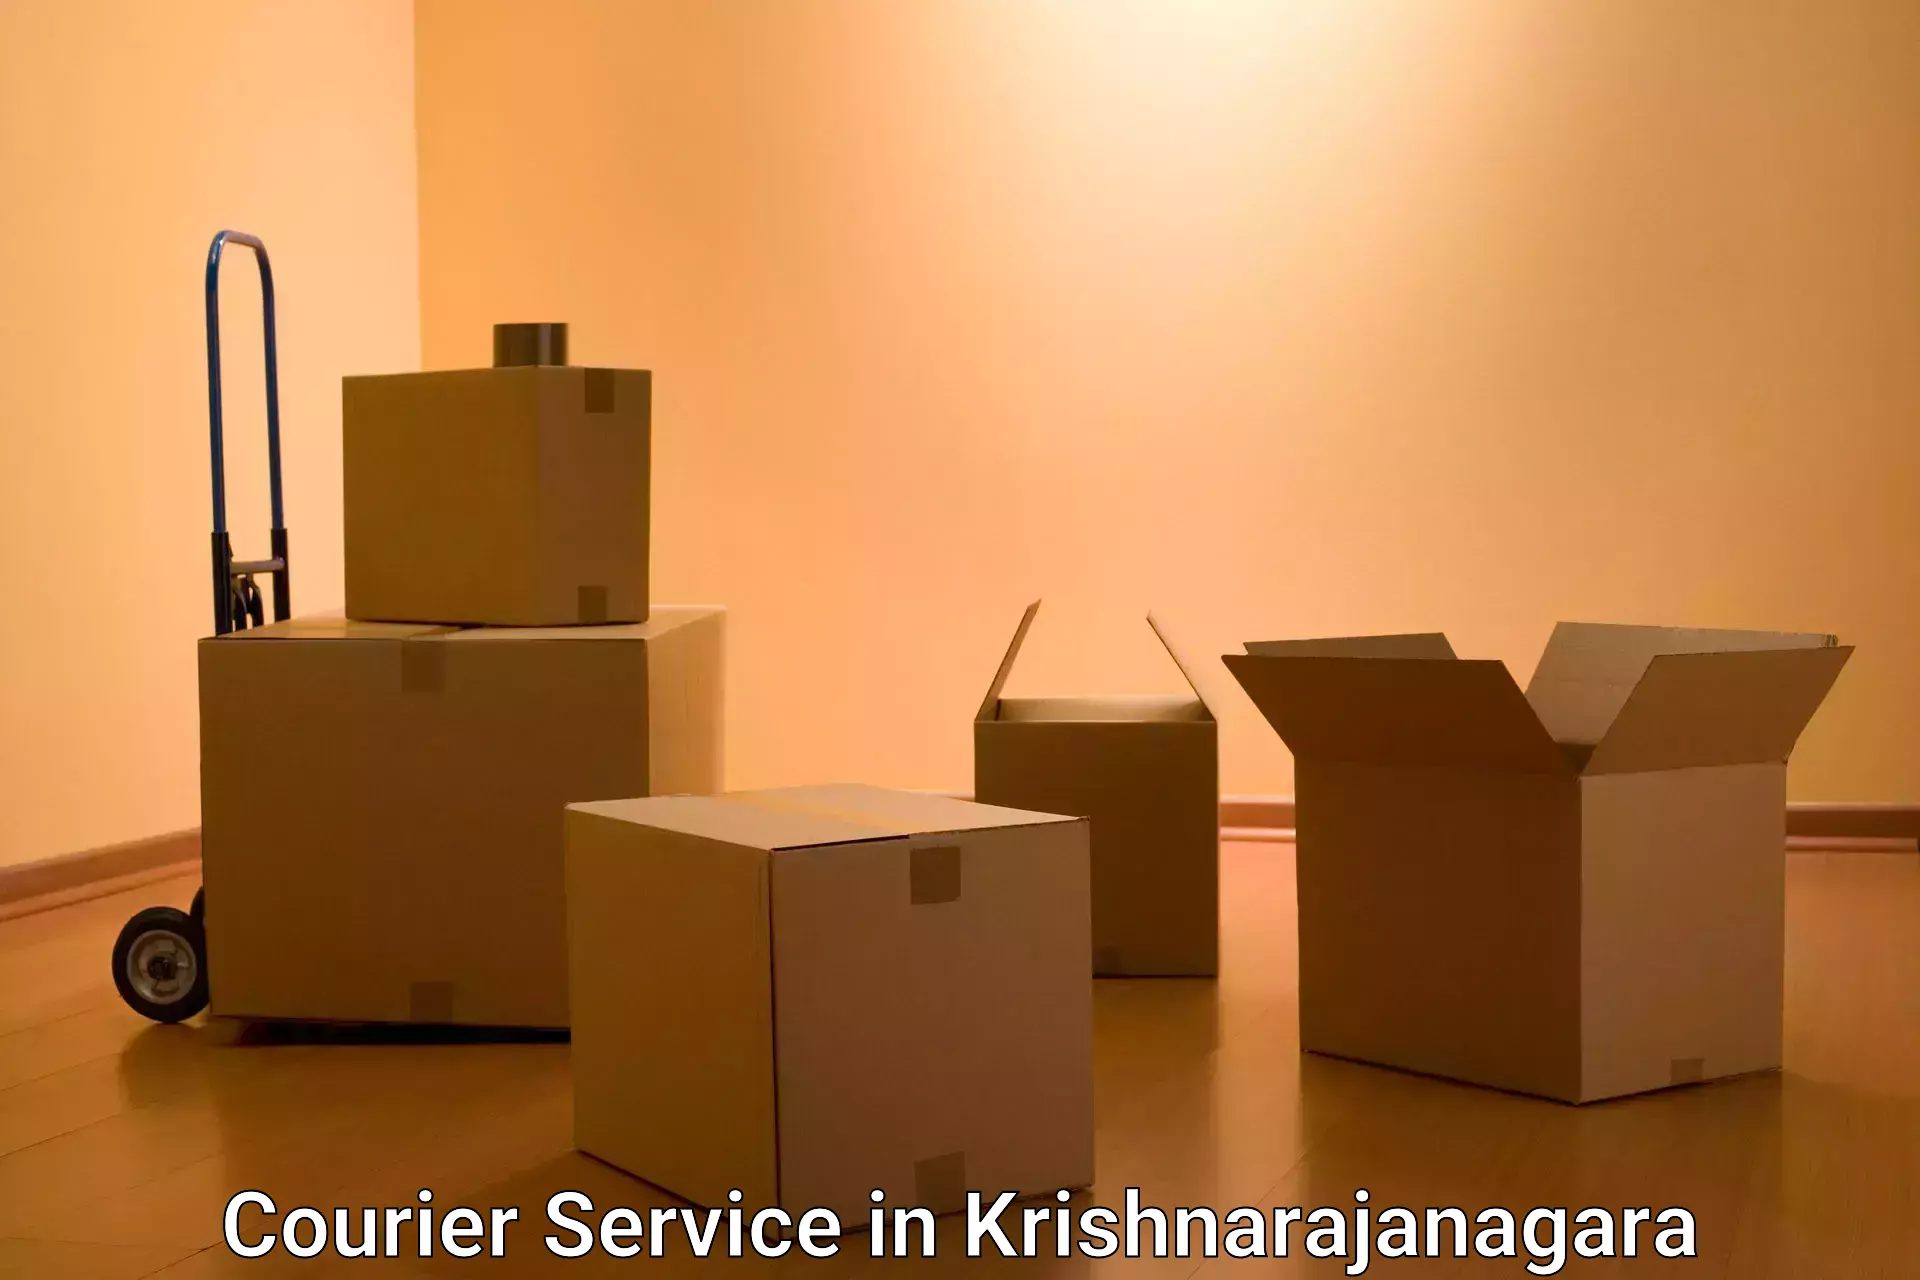 Small parcel delivery in Krishnarajanagara